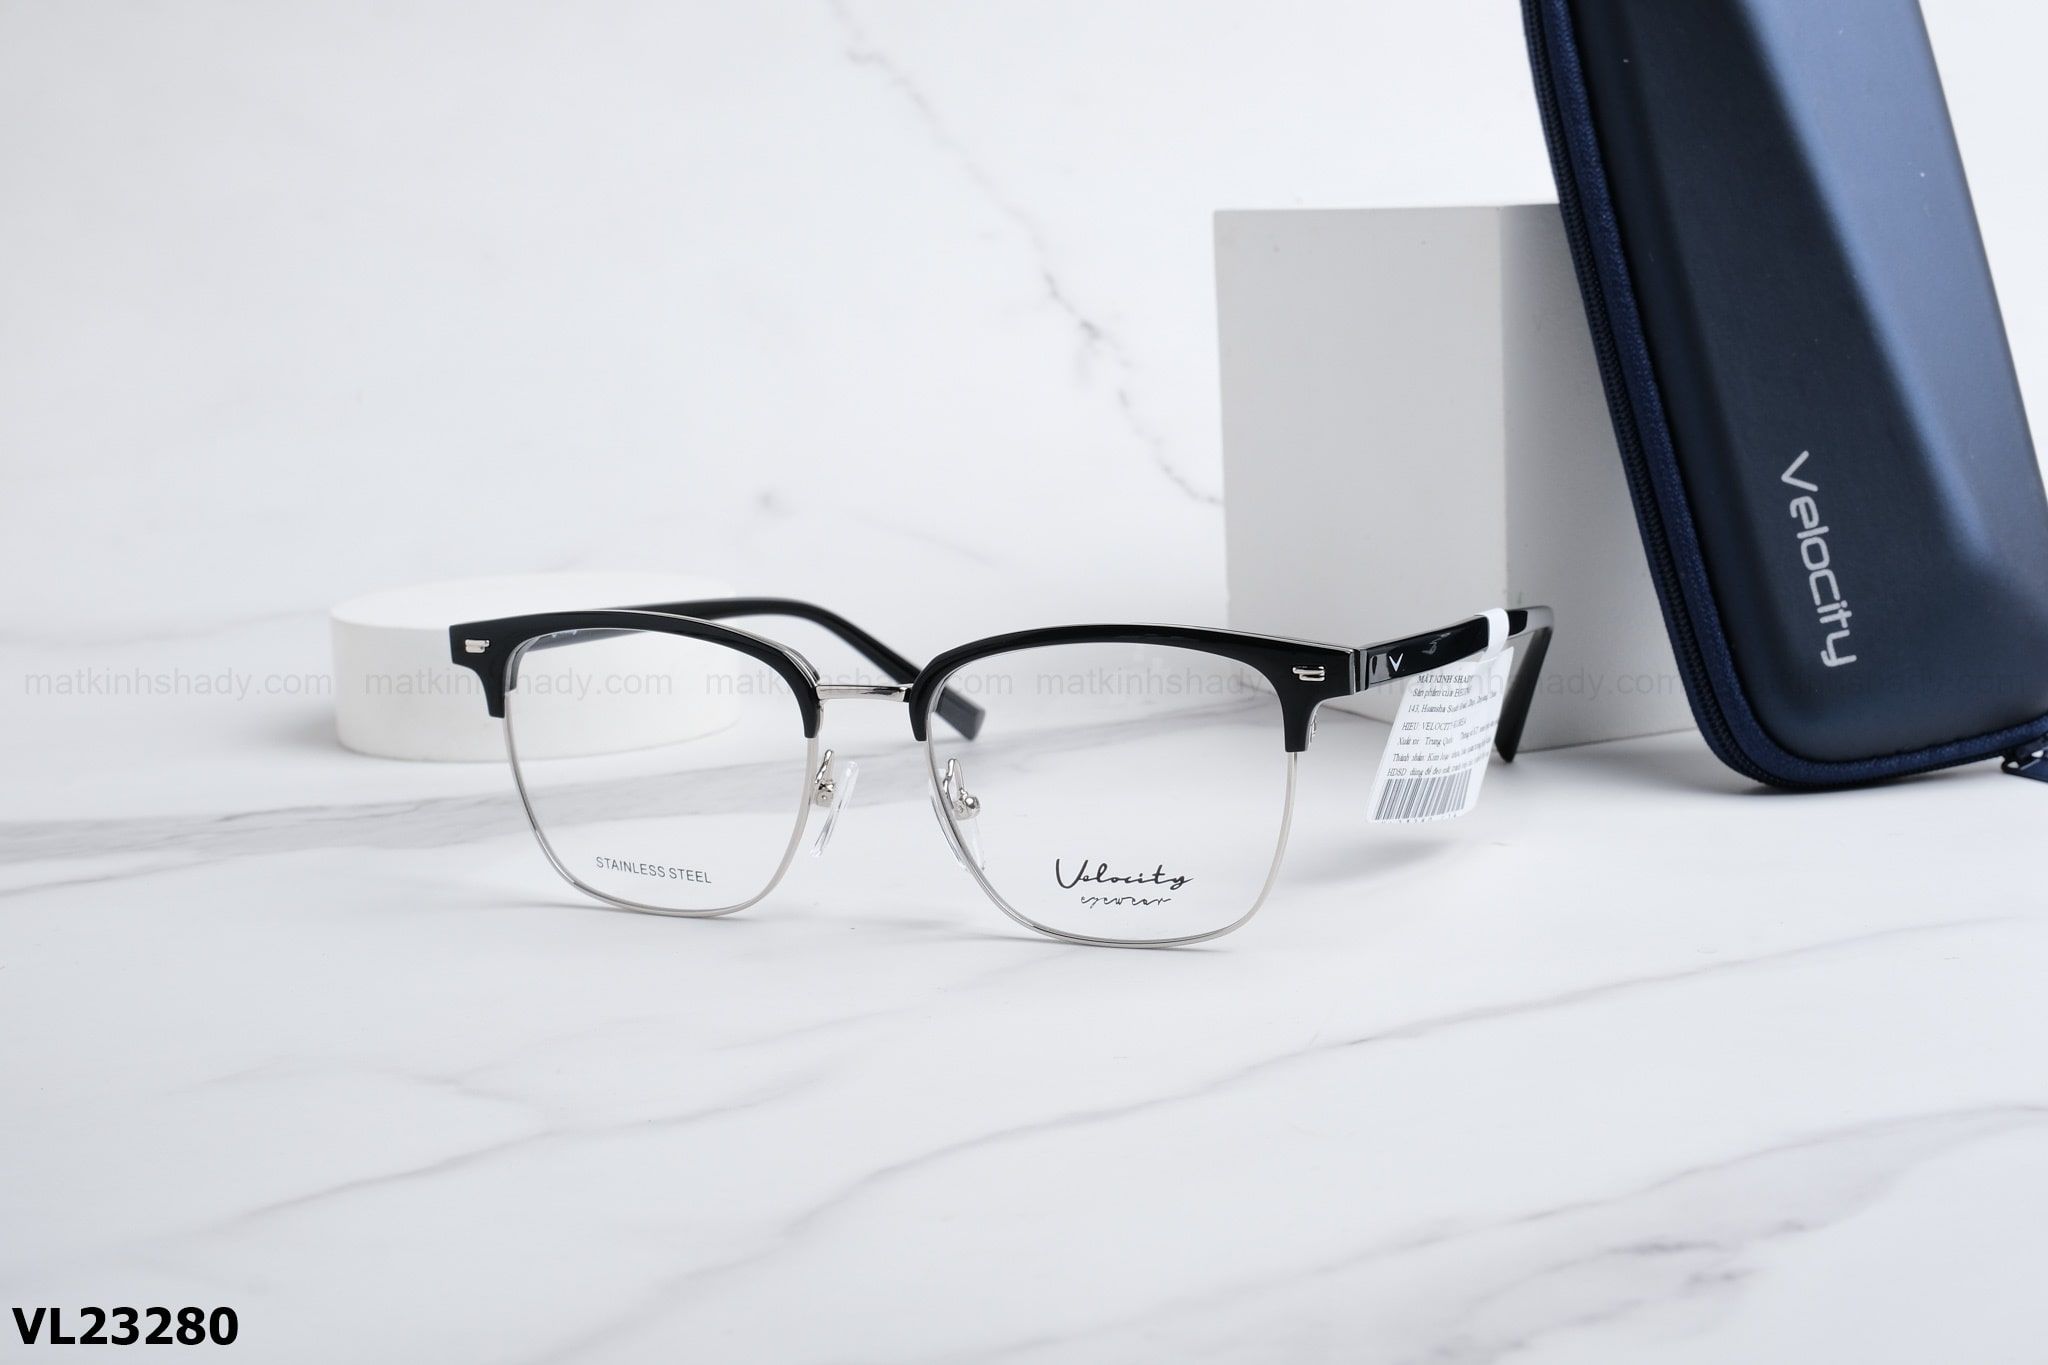  Velocity Eyewear - Glasses - VL23280 